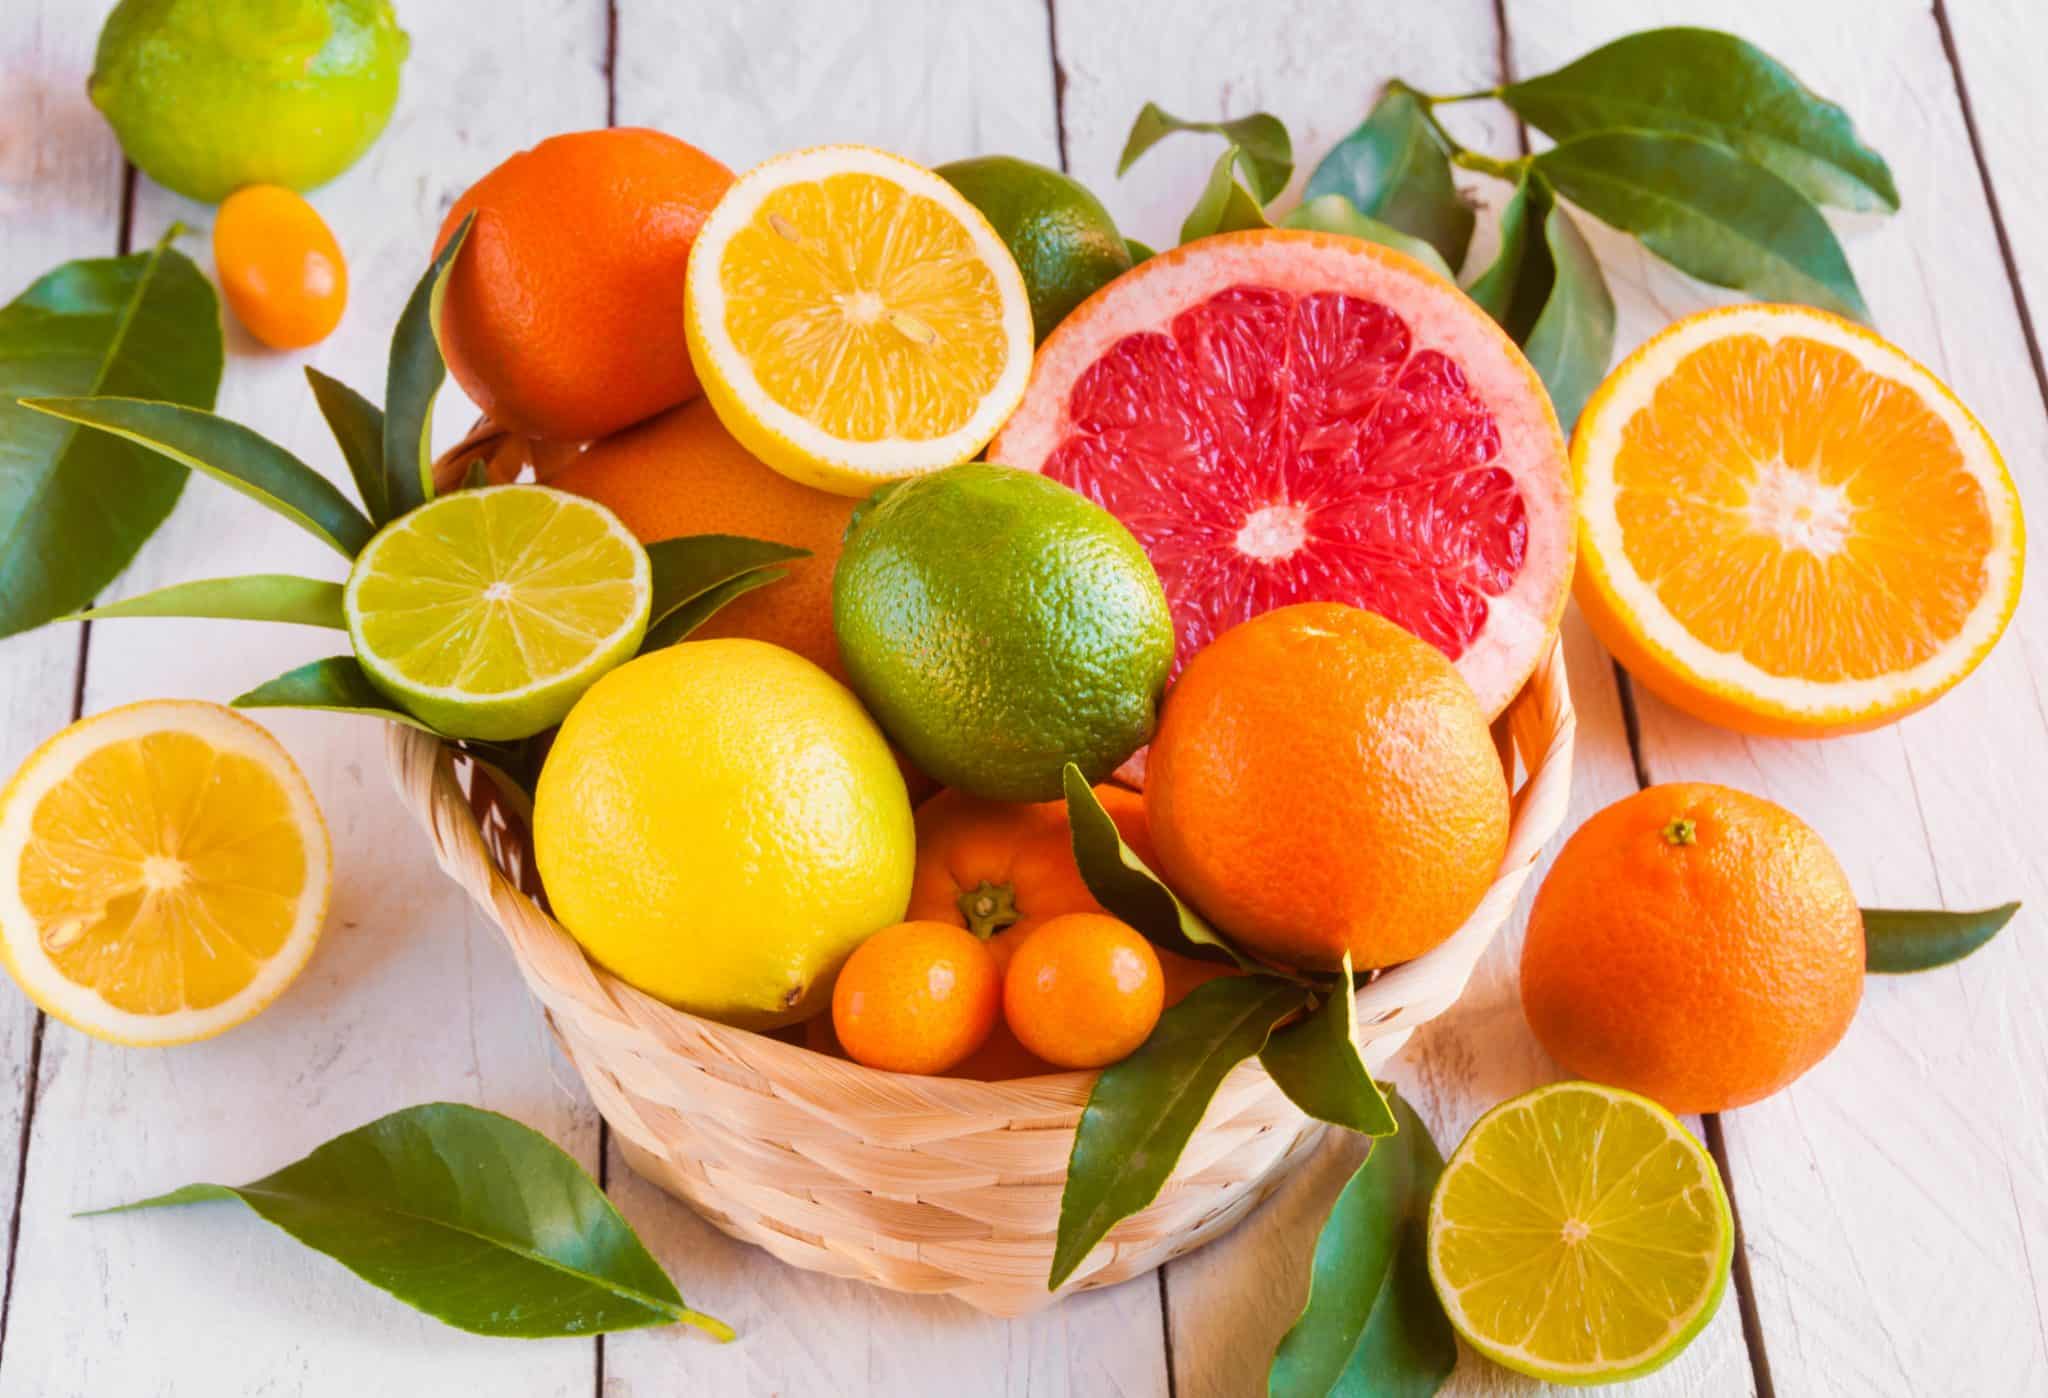 Auf dem Bild ist eine Variation von Zitrusfrüchten wie Orange, Grapefruit, Zitrone und Mandarine zu sehen.